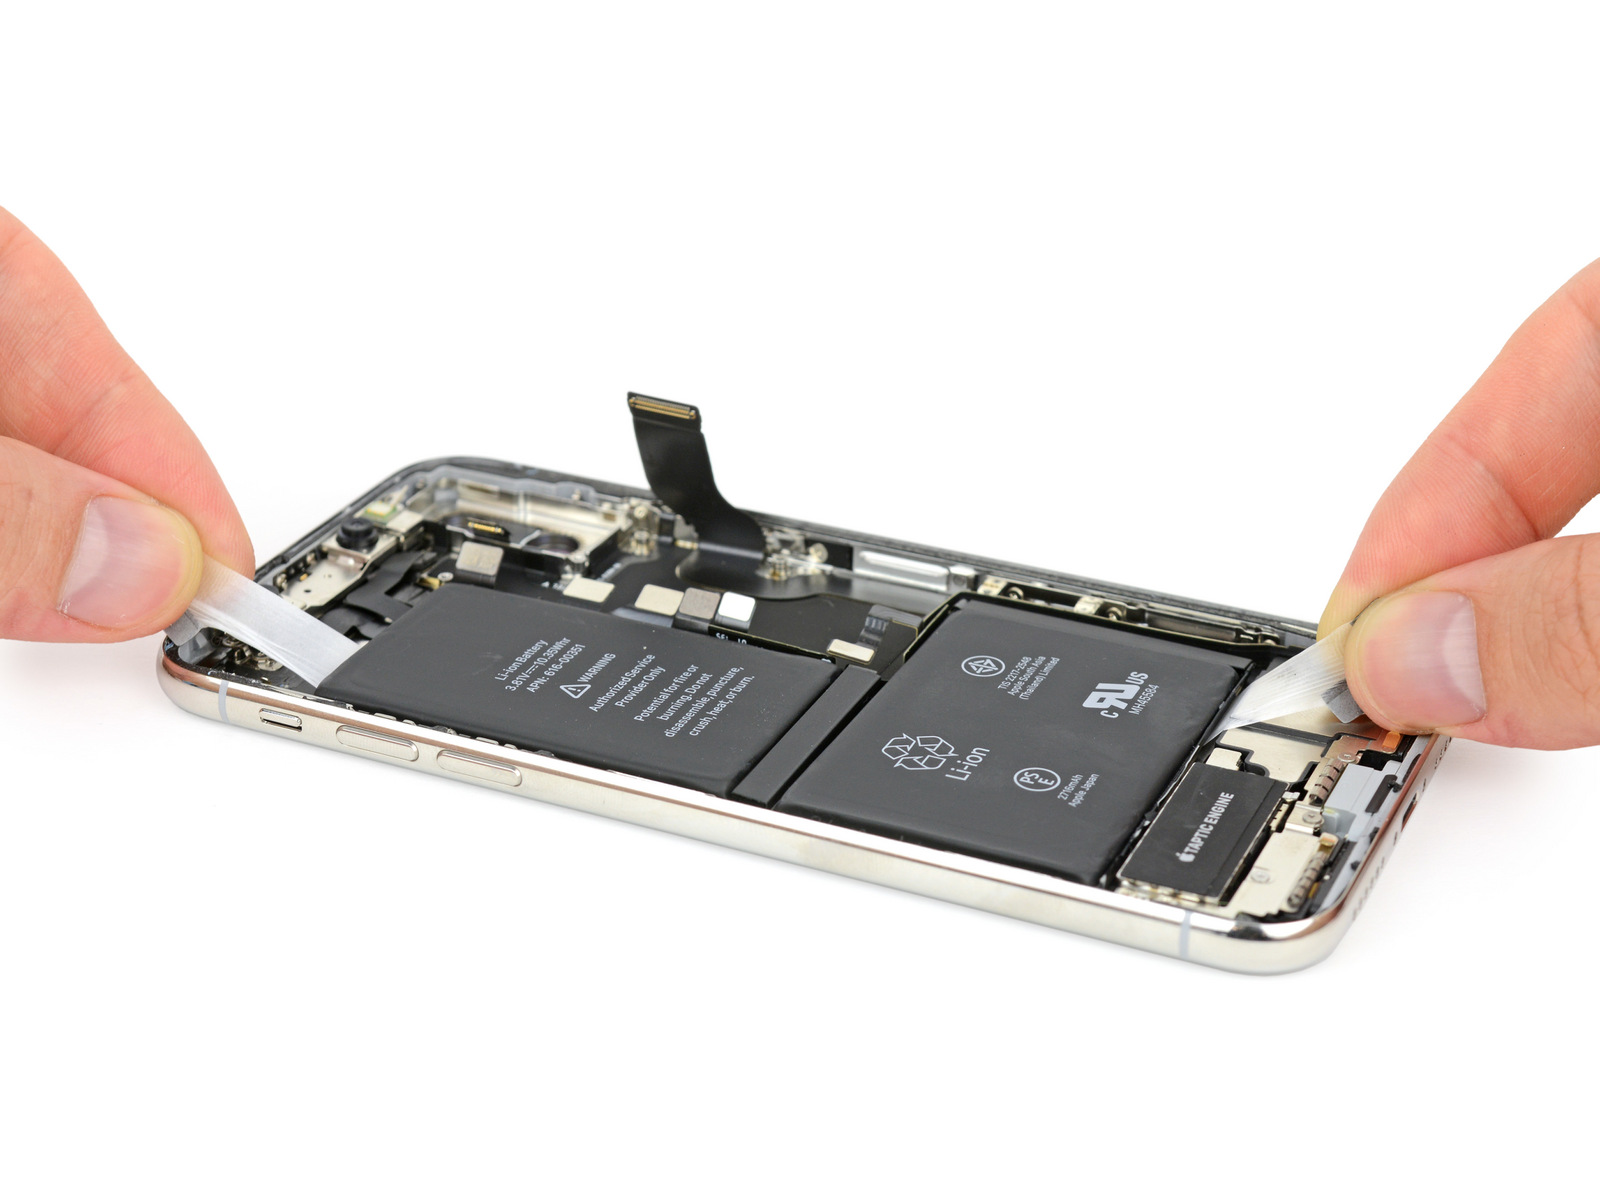 Chi phí thay pin cho các dòng sản phẩm của Apple ngày càng đắt đỏ, khiến người dùng lo lắng.